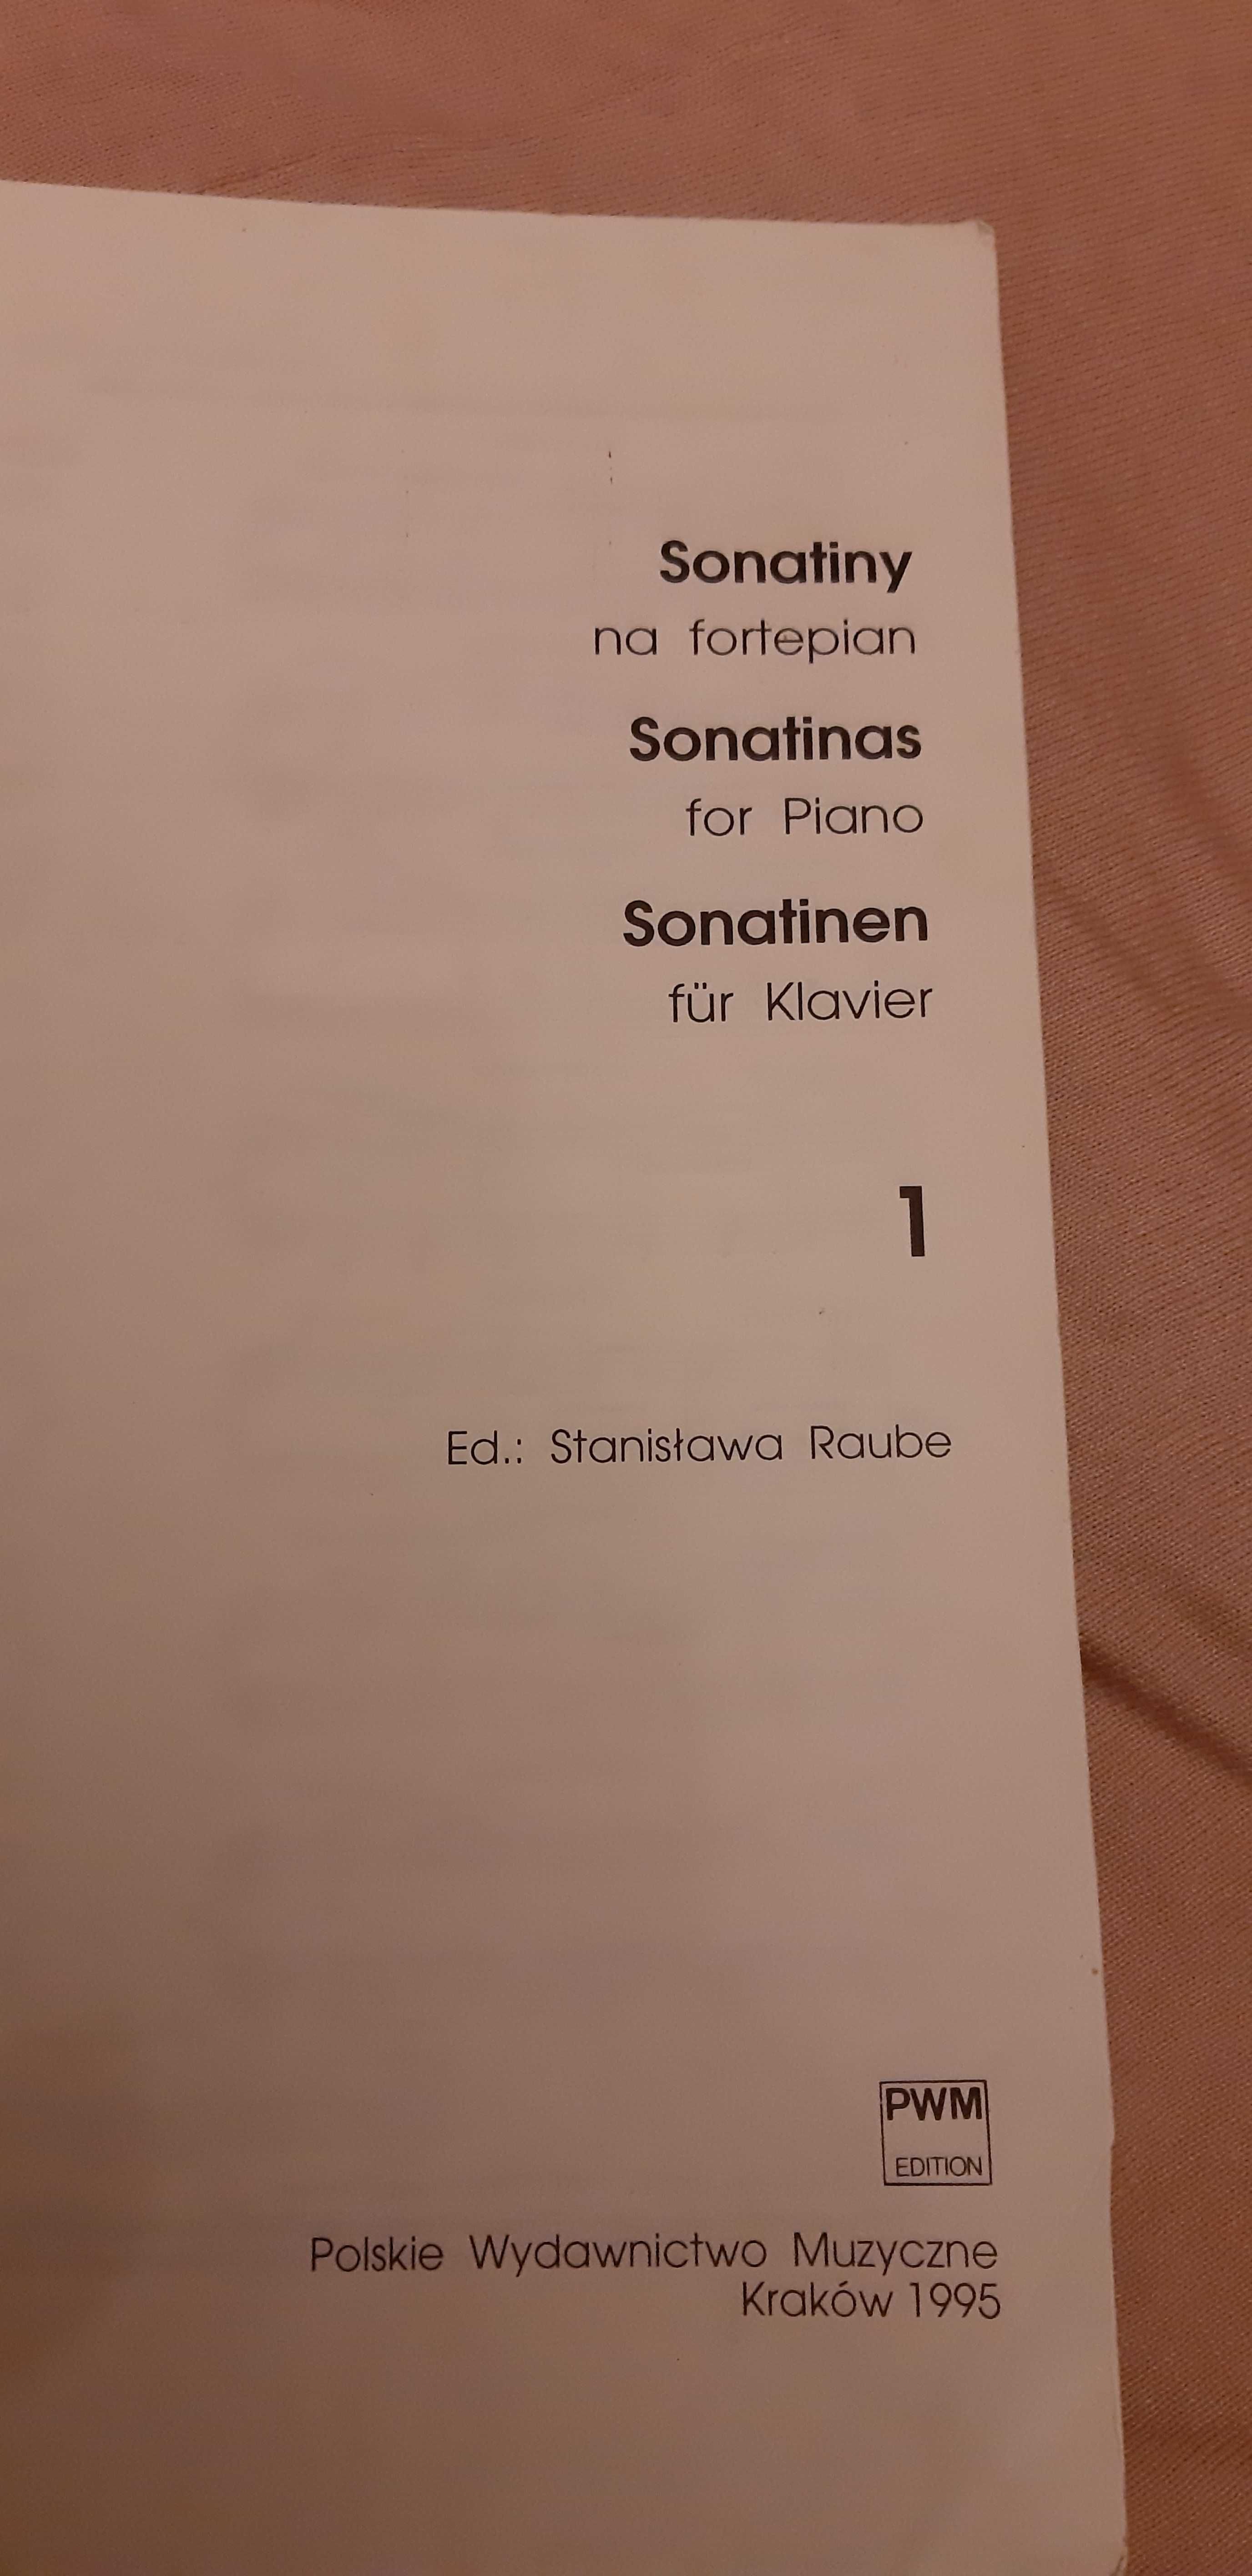 Sonatiny na fortepian Stanisława Raube cz 1